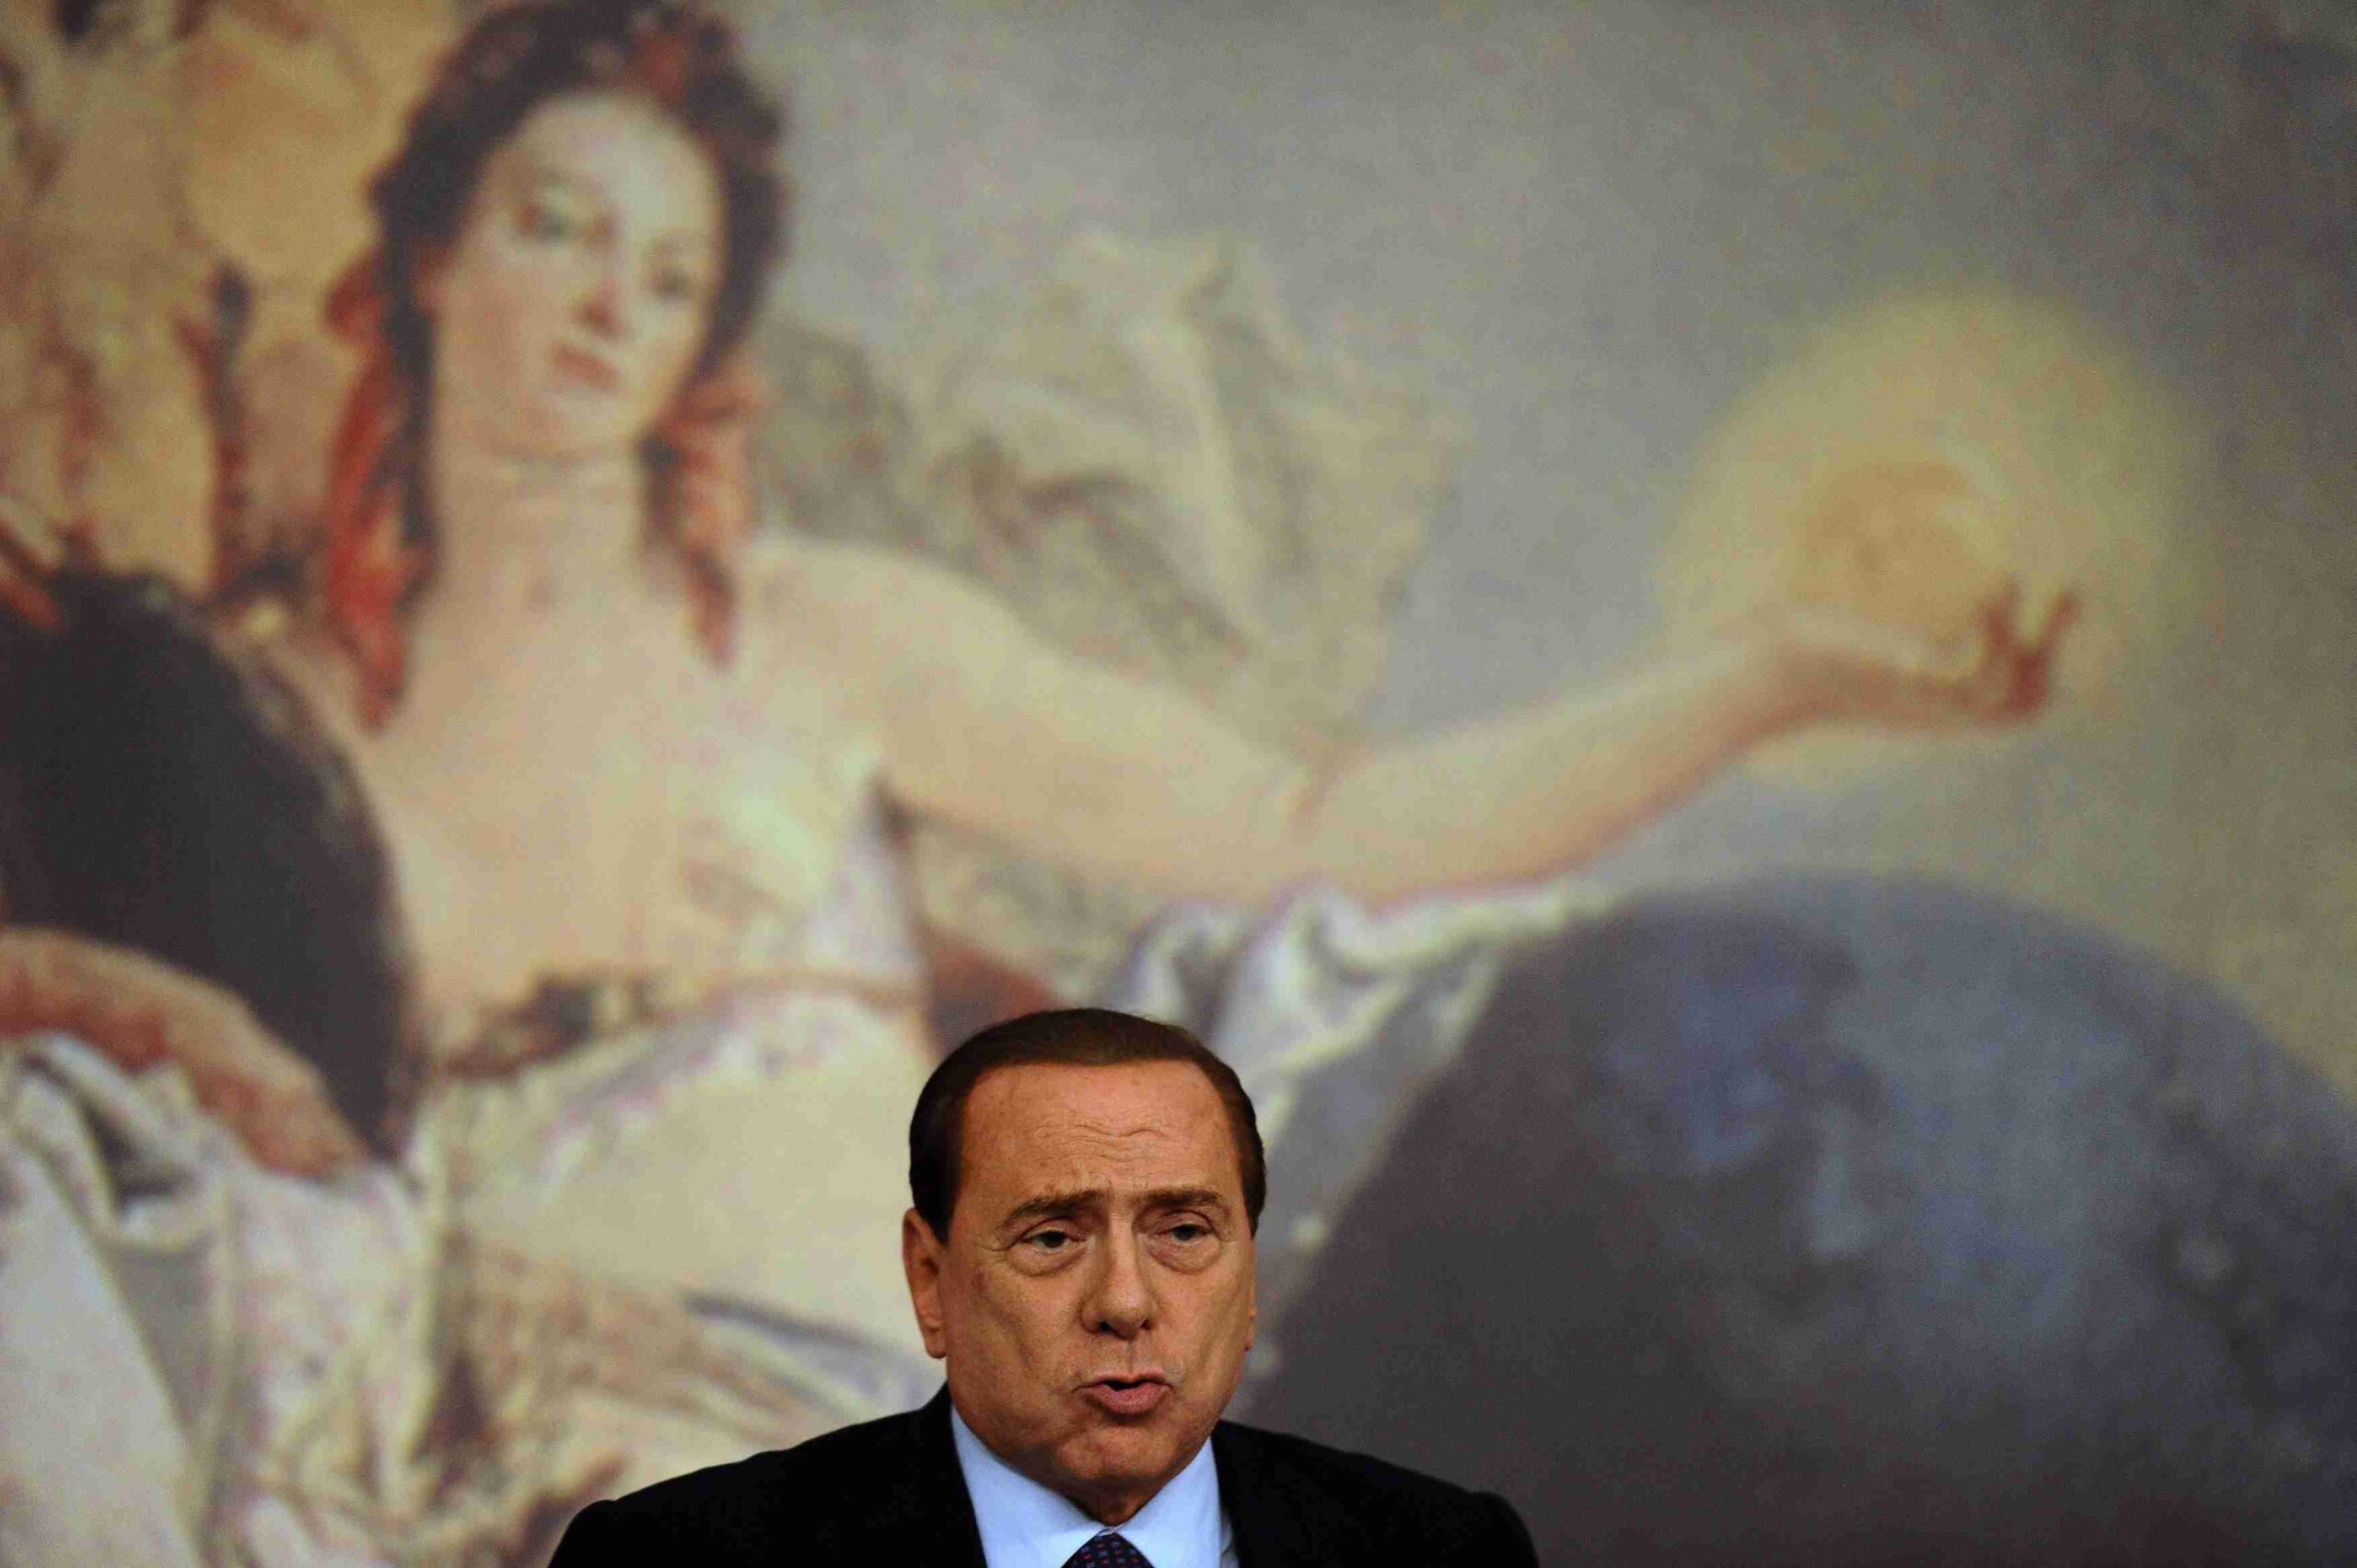 Silvio Berluskoni/ Italy's Prime Minister Silvio Berlusconi